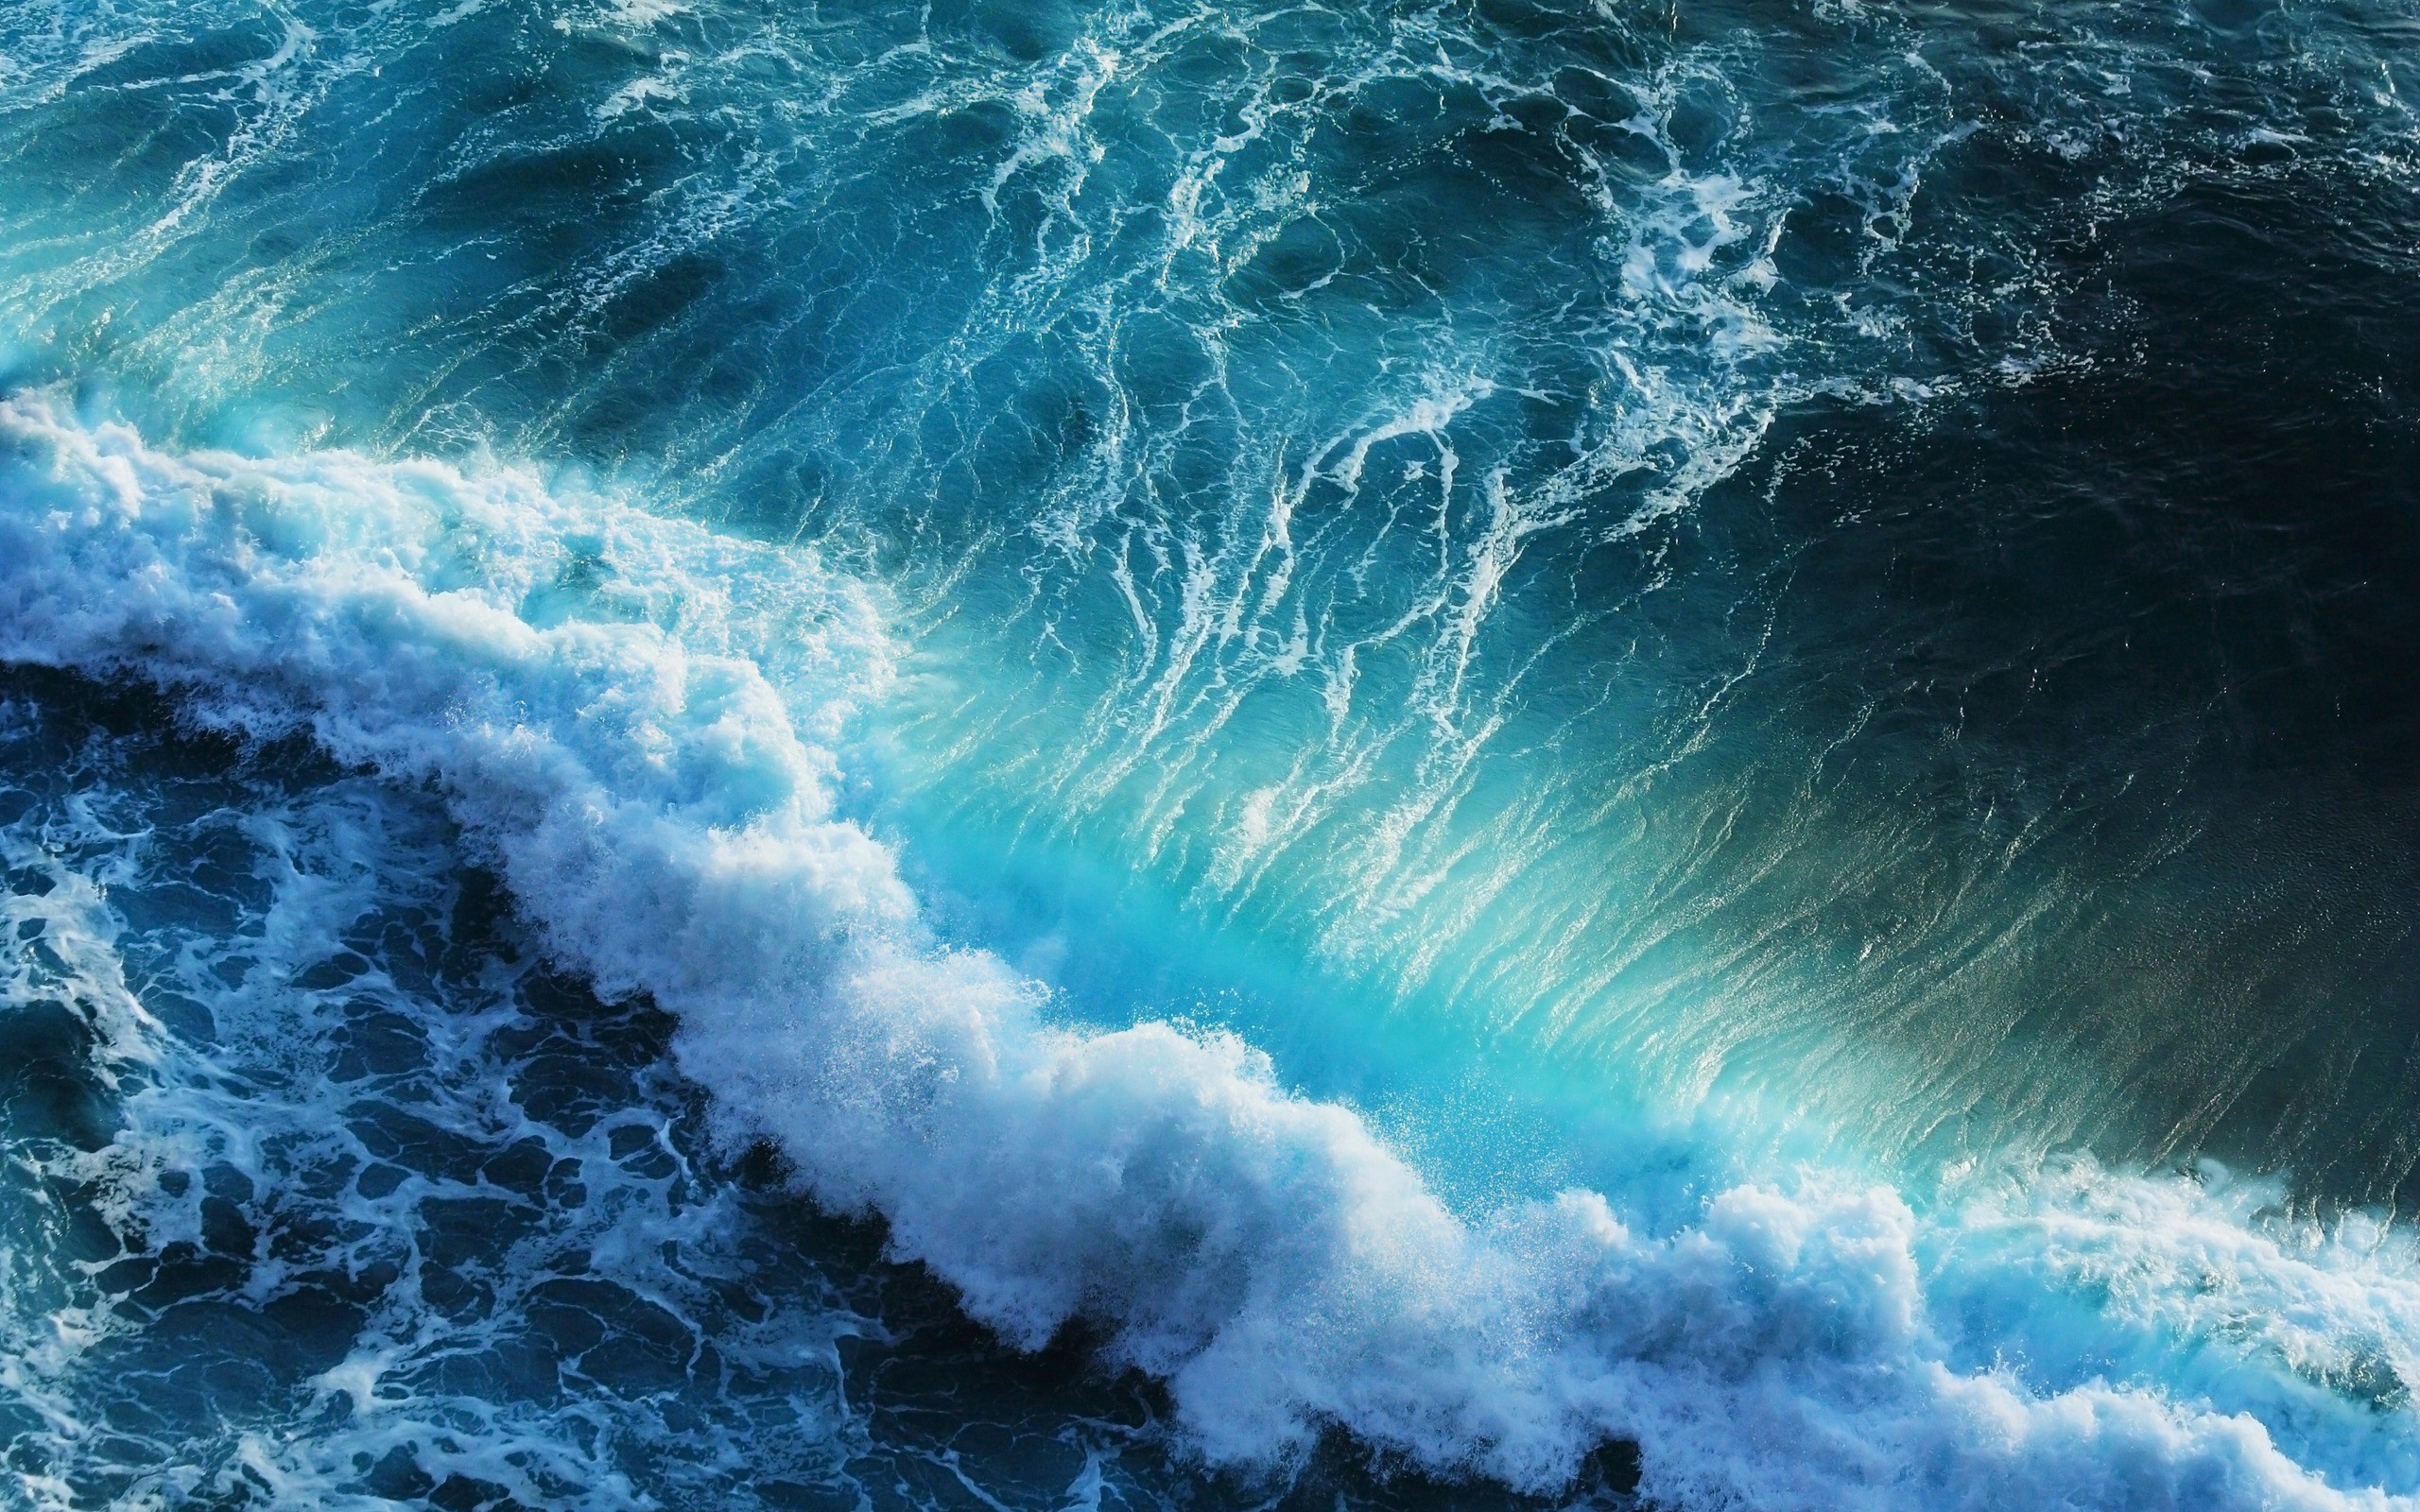 Bộ sưu tập hình nền đại dương sẽ khiến cho giao diện máy tính của bạn trở nên sống động và hấp dẫn hơn bao giờ hết. Với những bức tranh tuyệt đẹp về đại dương, bạn sẽ cảm nhận được sự thư thái và yên bình trong từng giây phút. Hãy lựa chọn và trang trí ngay cho màn hình máy tính của mình!